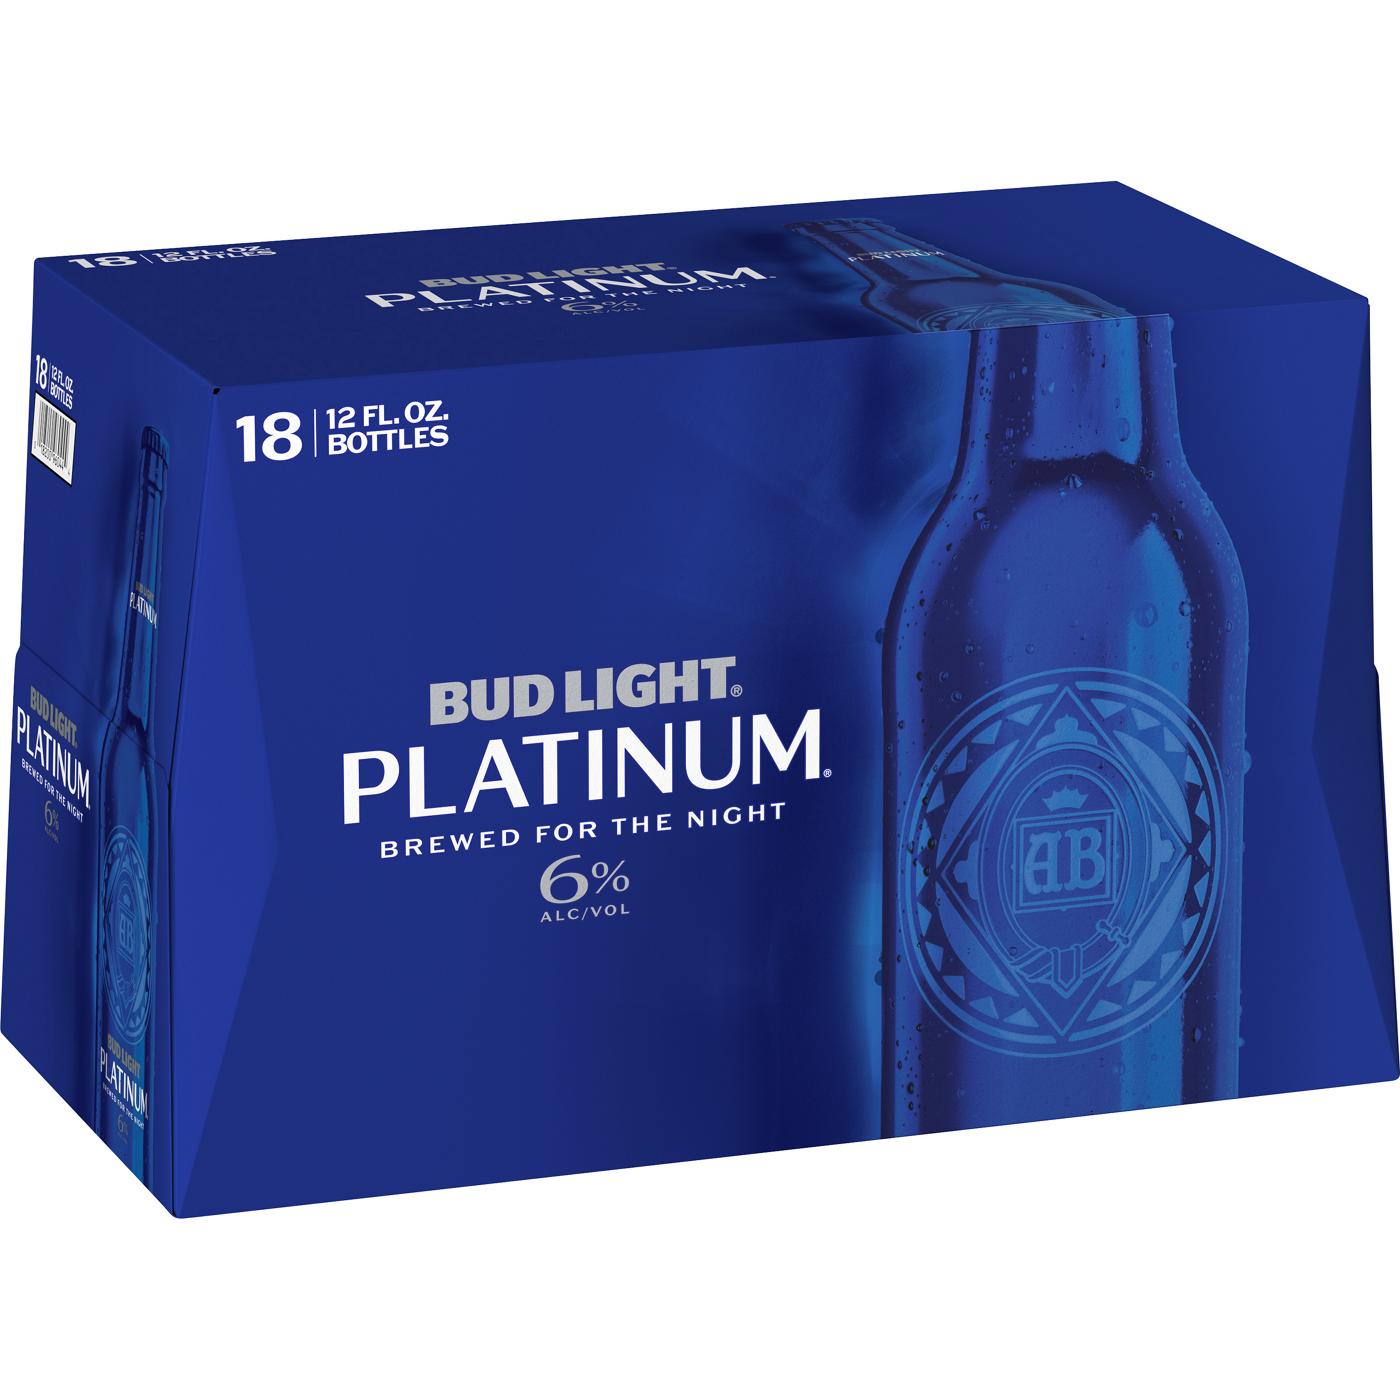 Bud Light Platinum Beer 12 oz Bottles; image 1 of 2